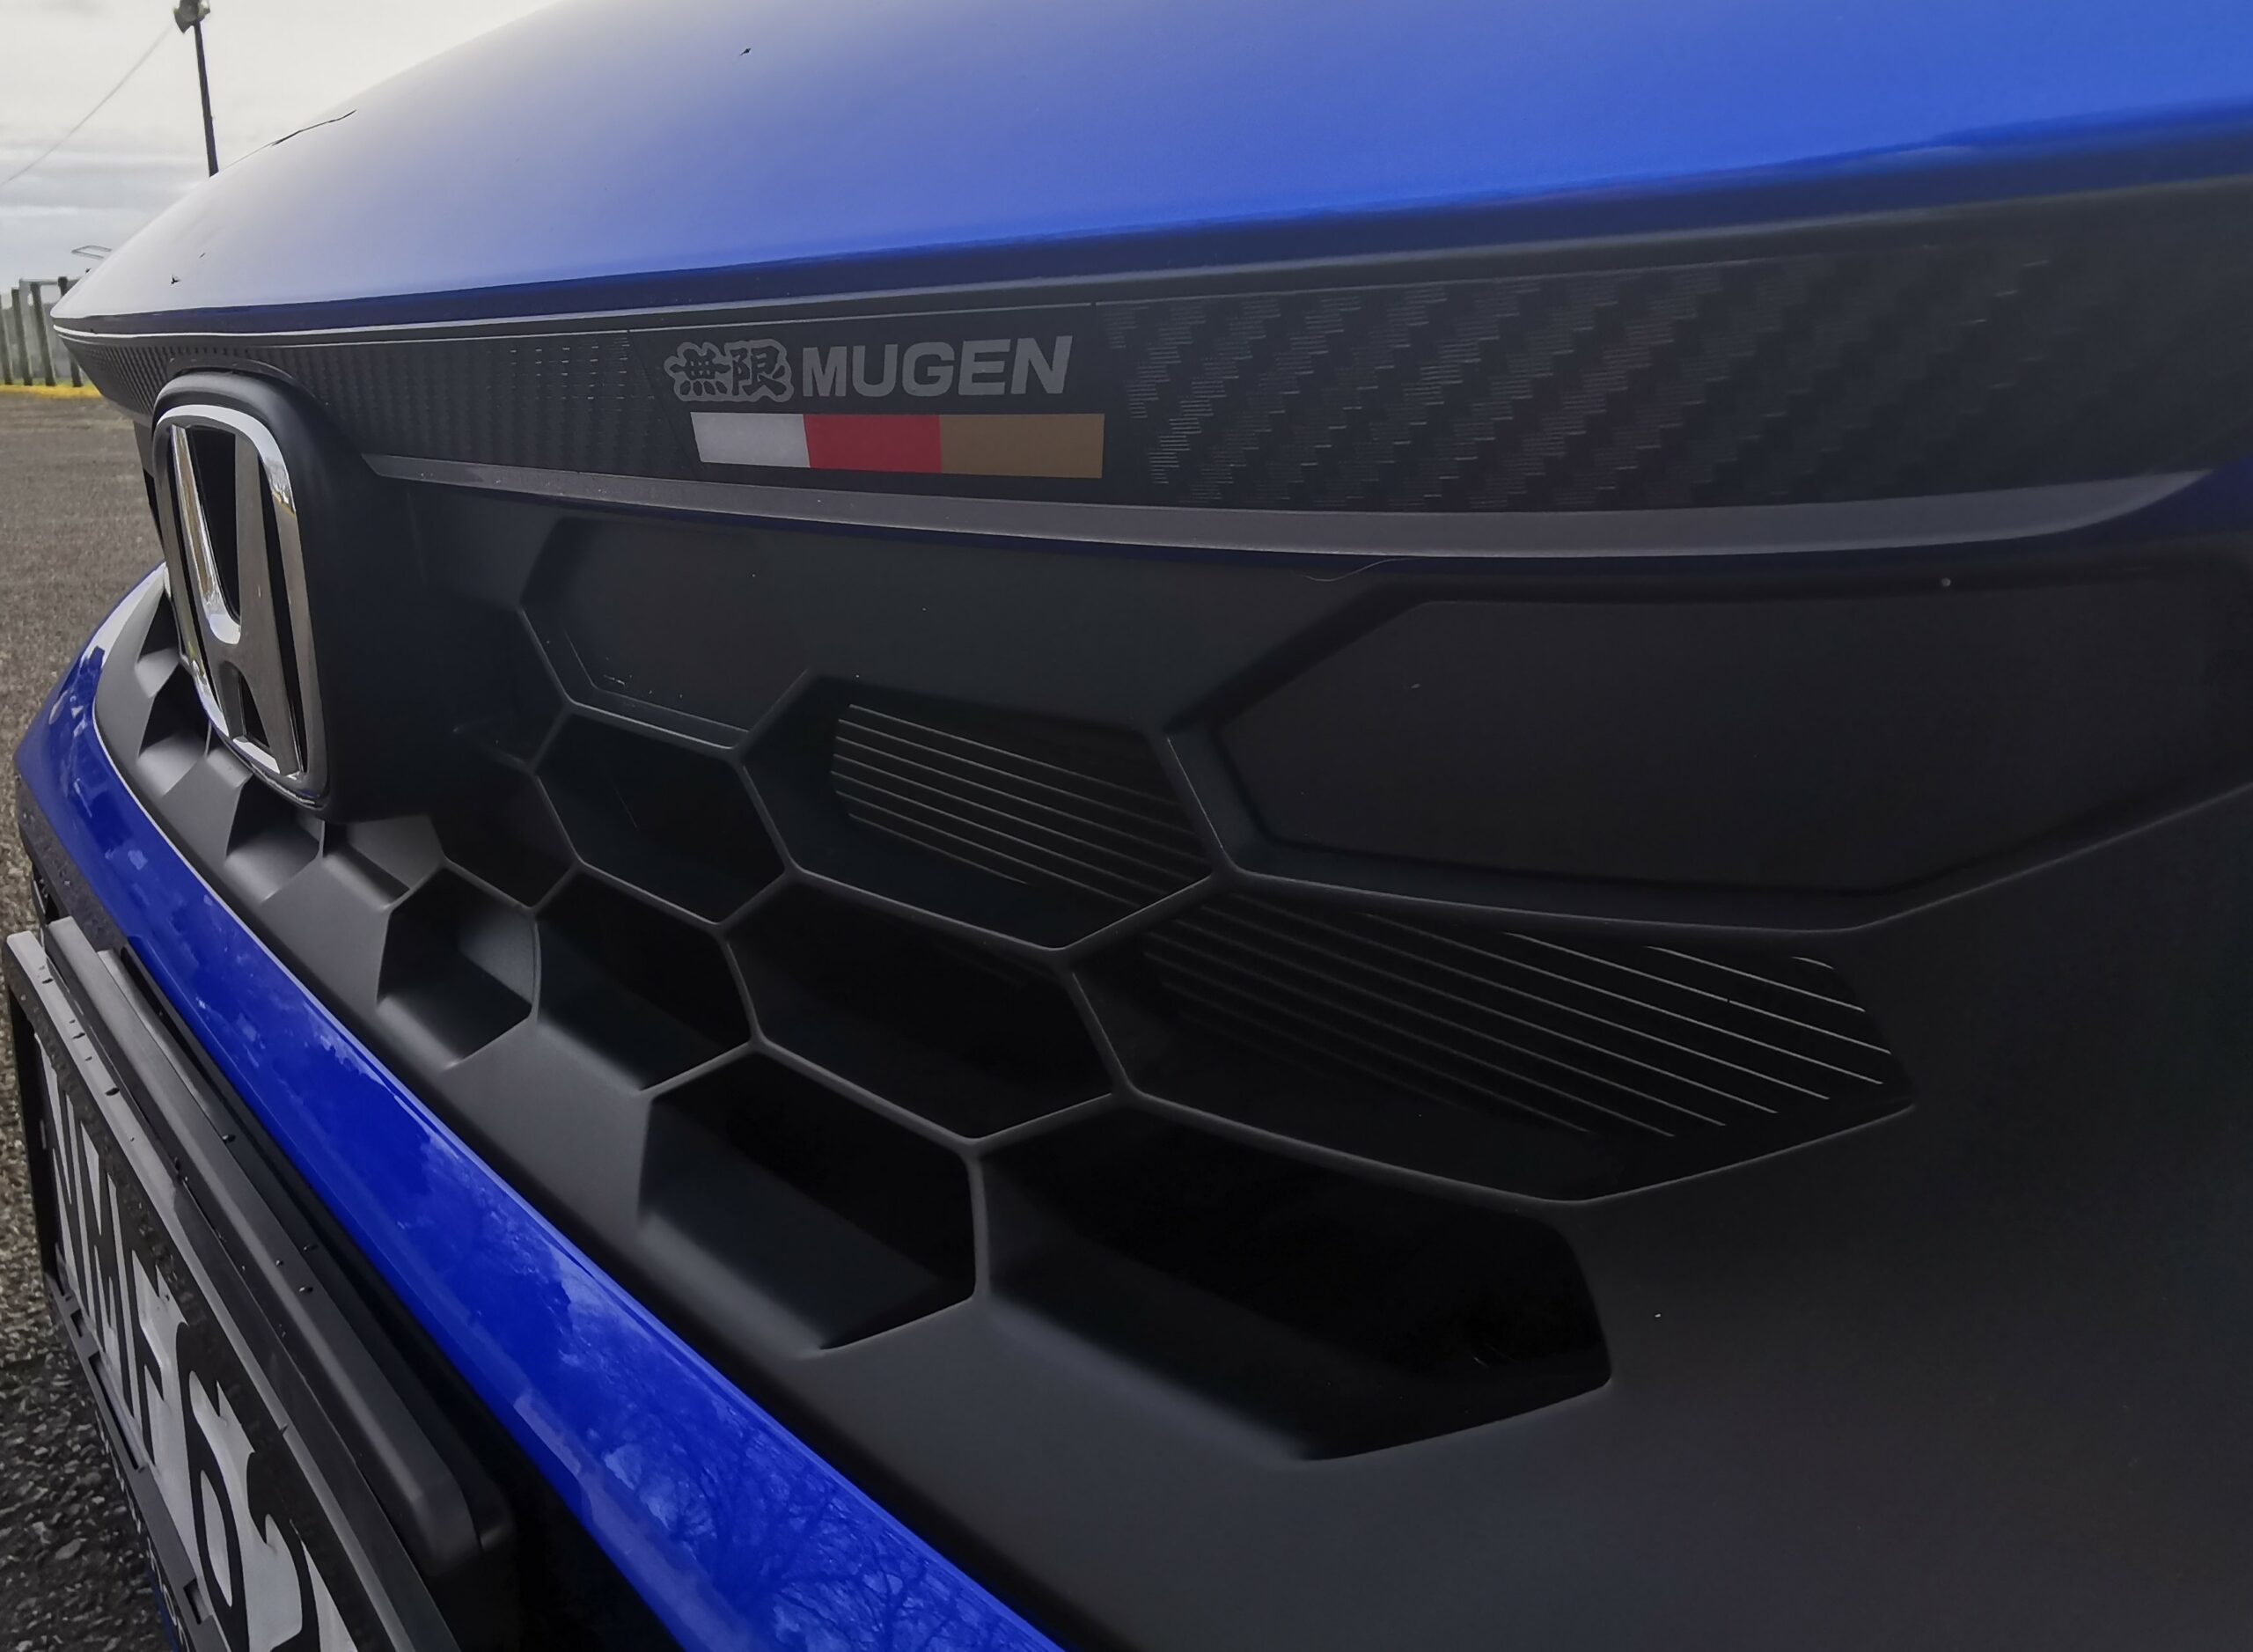 2022 Honda Civic Mugen review NZ